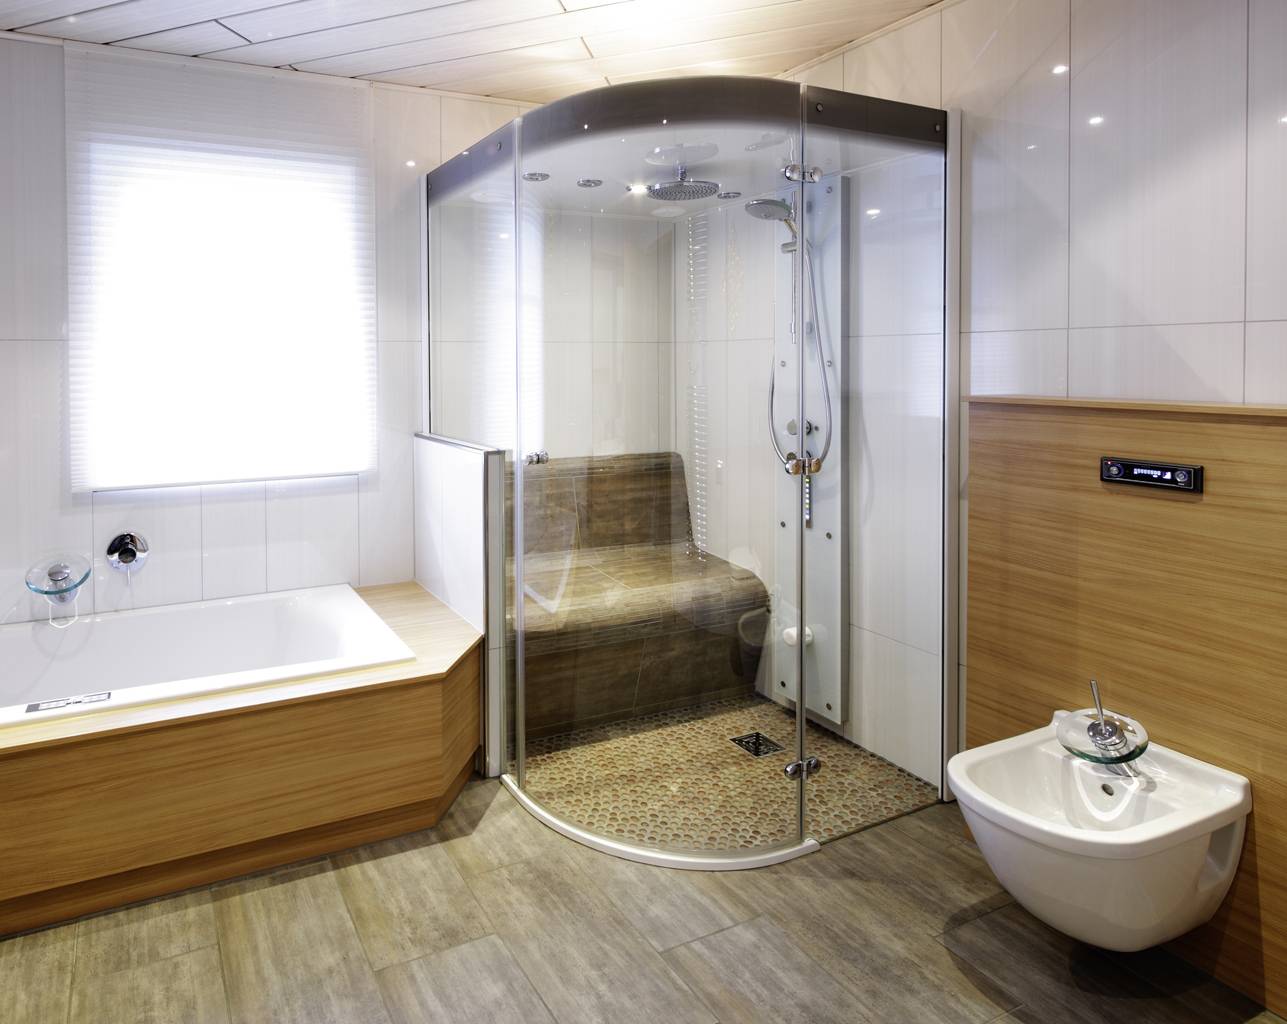 Как сделать уютной маленькую ванную комнату с душевой кабиной и стиральной машиной?